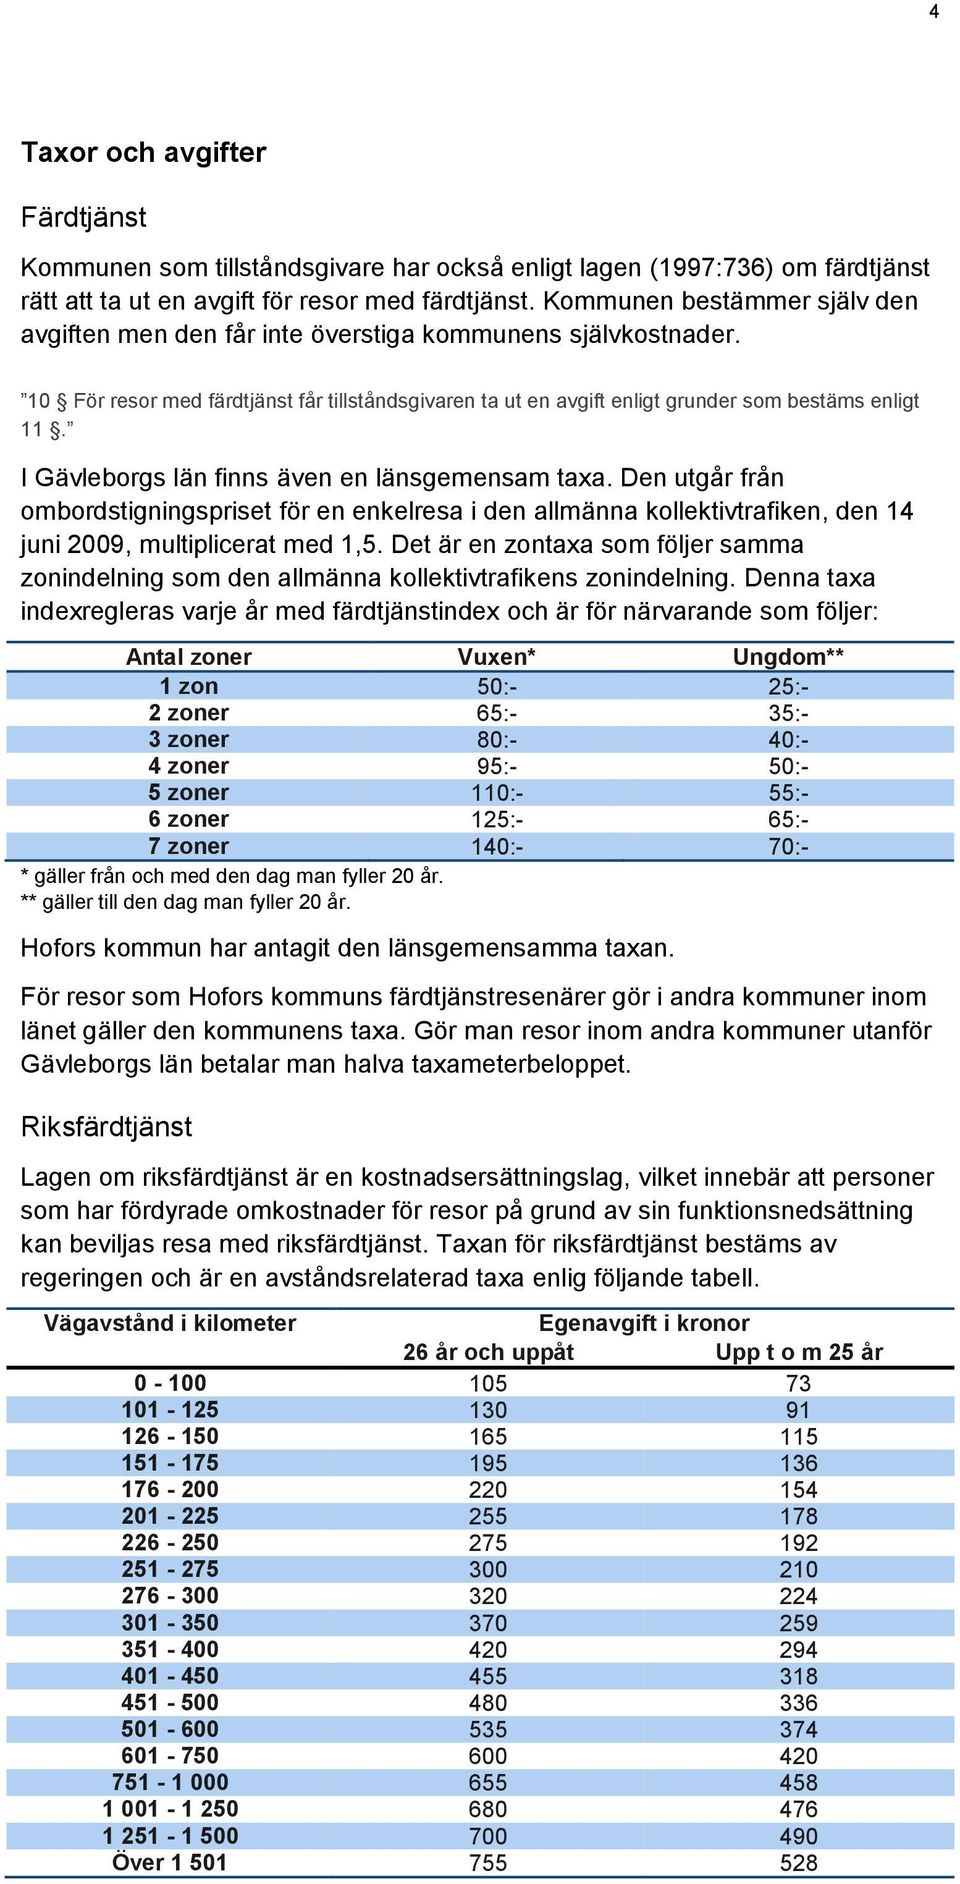 I Gävleborgs län finns även en länsgemensam taxa. Den utgår från ombordstigningspriset för en enkelresa i den allmänna kollektivtrafiken, den 14 juni 2009, multiplicerat med 1,5.